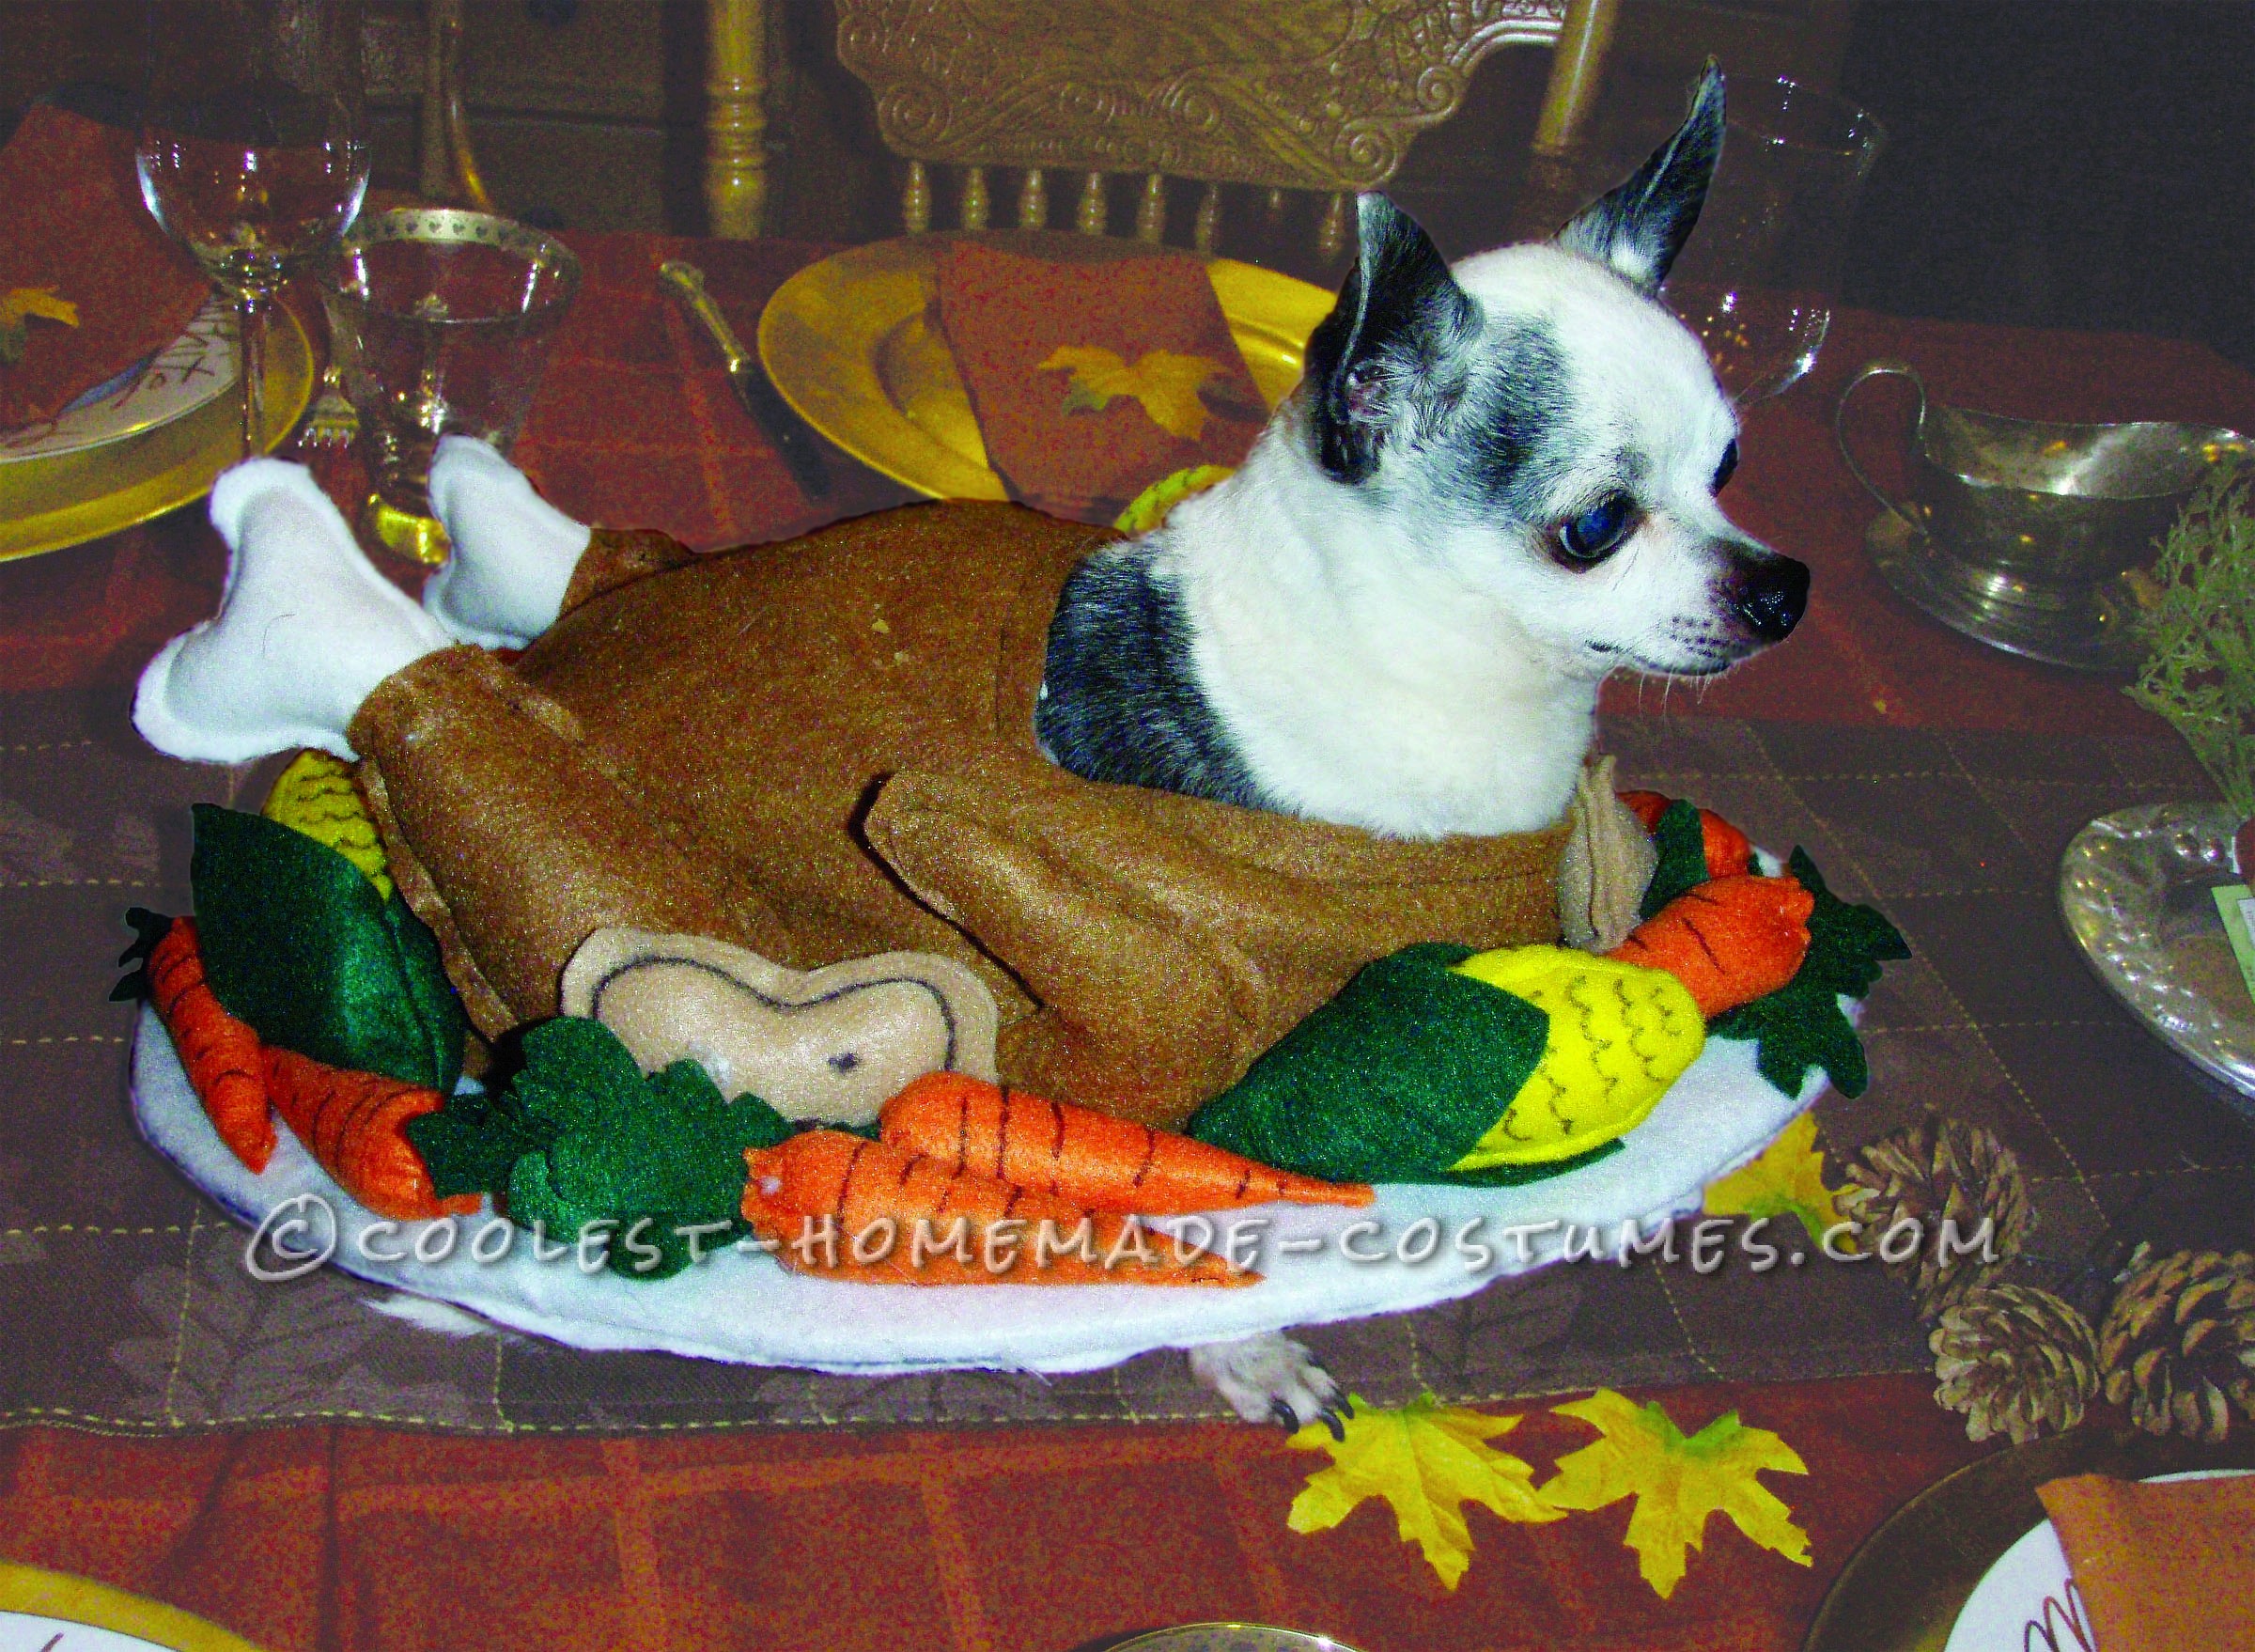 Funny Homemade Dog Costume: Gobble Til You Wobble